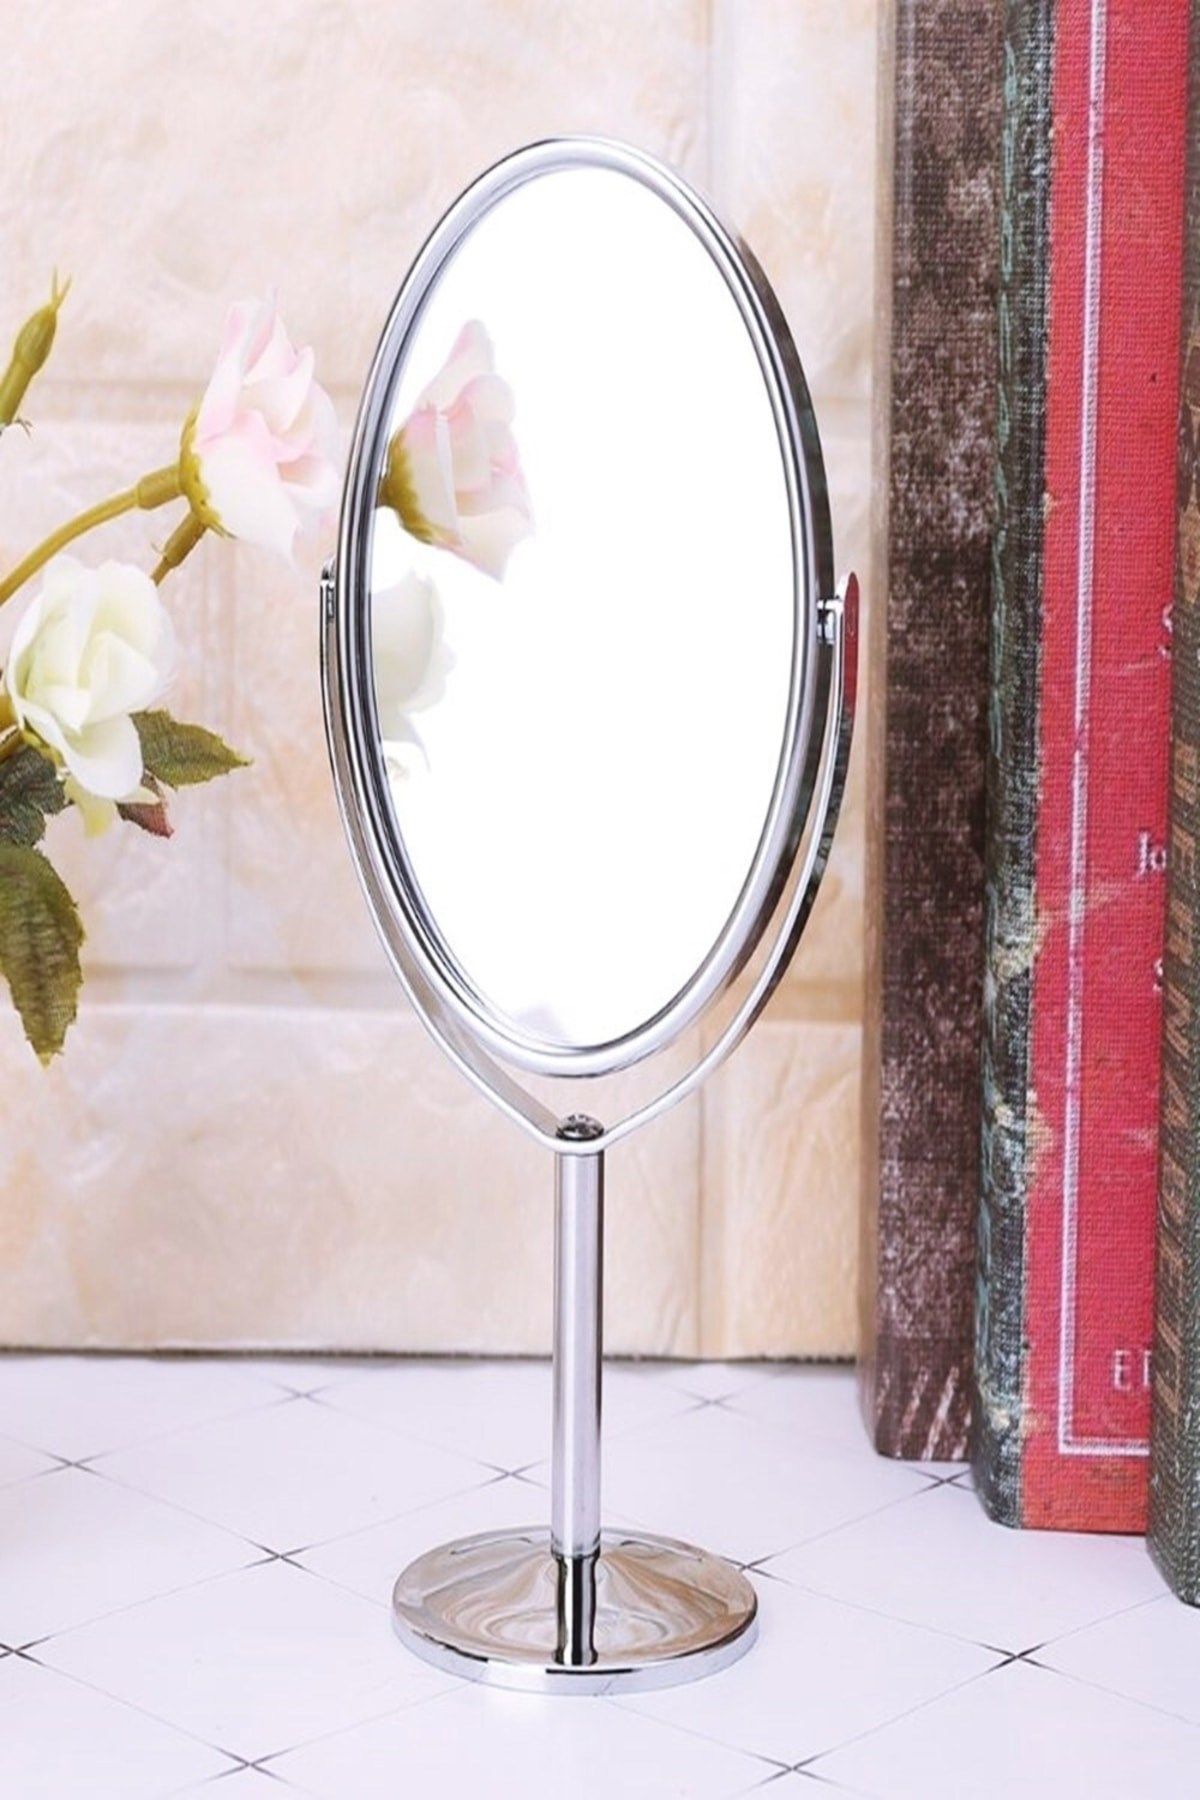 2 Adet Masa Üstü Mini Makyaj & Bakım Aynası 360° Dönebilen Çift Taraflı Büyüteçli Makyaj Aynası 15x8